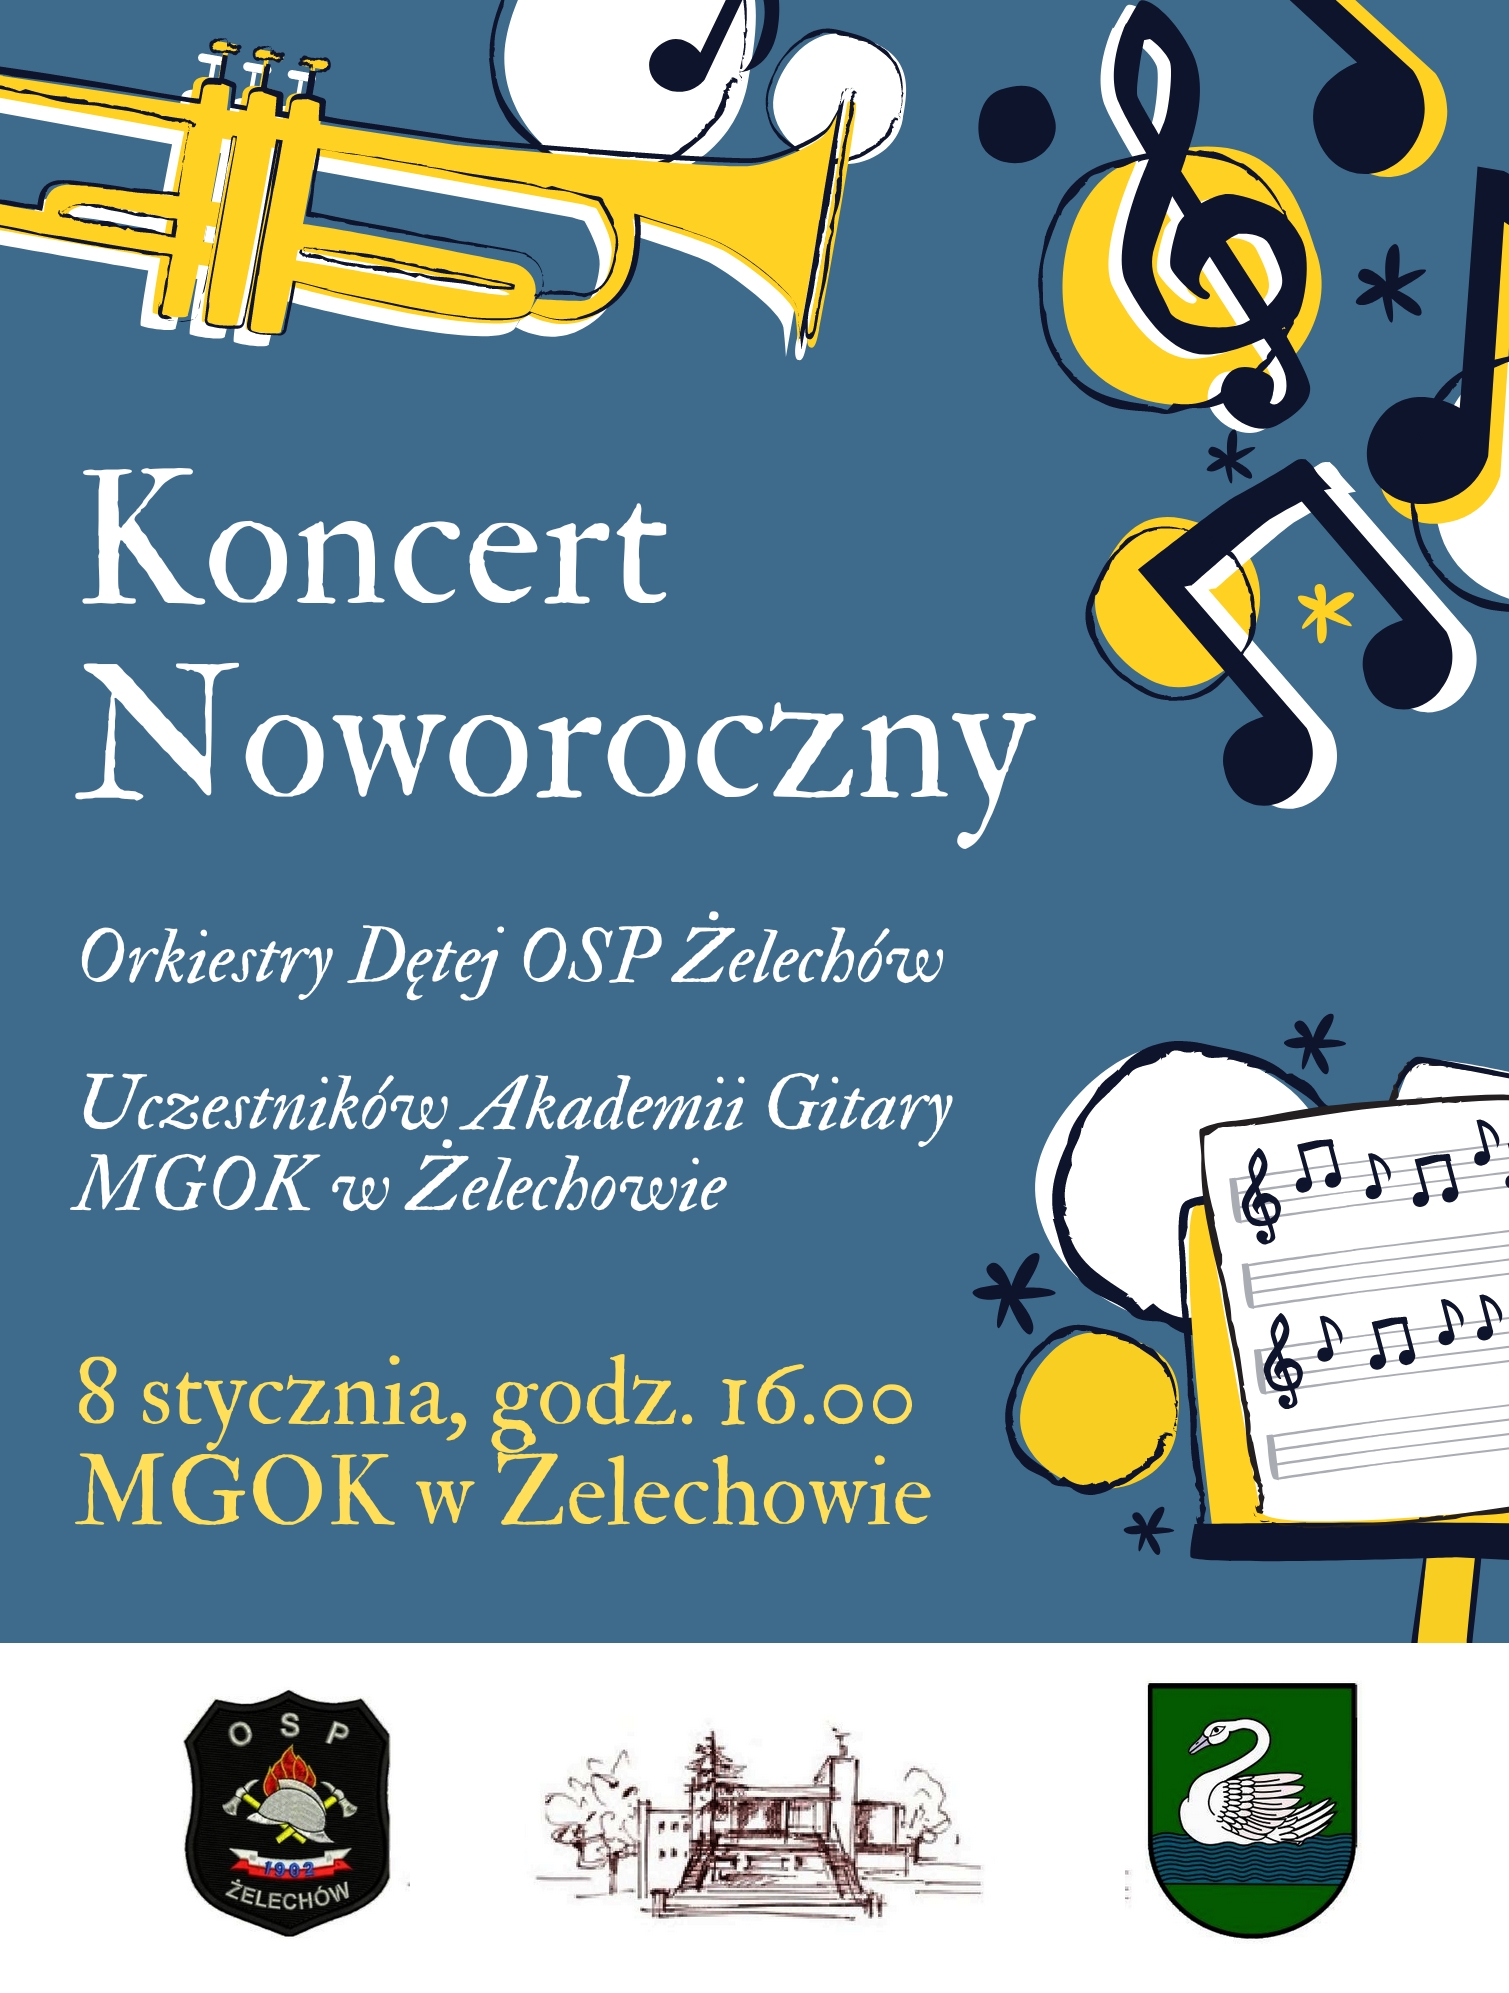 Miniaturka artykułu Koncert Noworoczny Orkiestry Dętej OSP w Żelechowie oraz uczestników Akademii Gitary MGOK